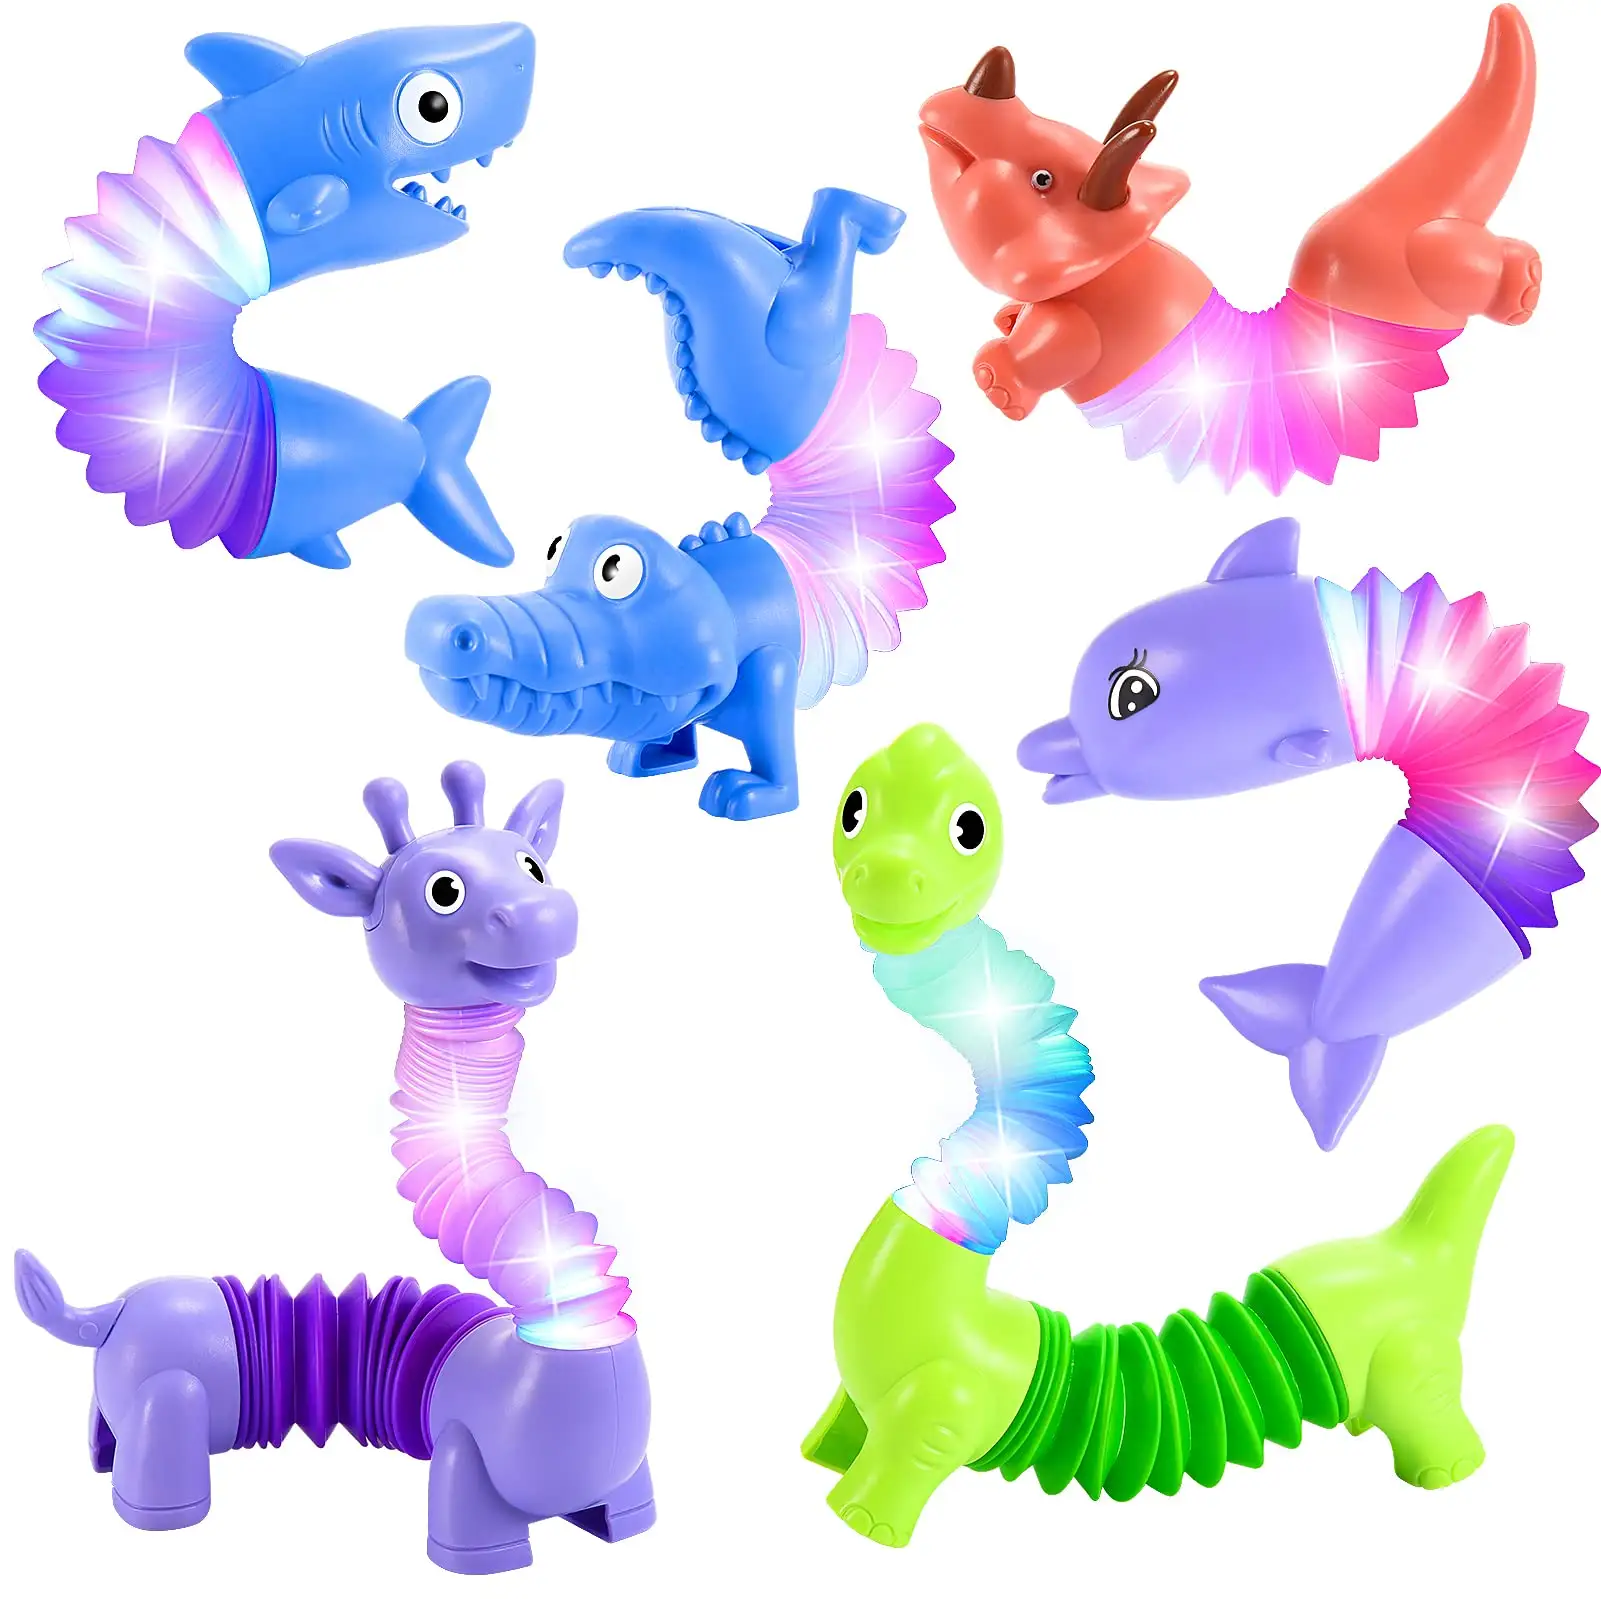 6er Pack LED Animal Pop Tubes für Kinder Tiere Zappeln Kleinkinder Mädchen Jungen Geschenke New Autism Sensory Light Up Party begünstigt Spielzeug